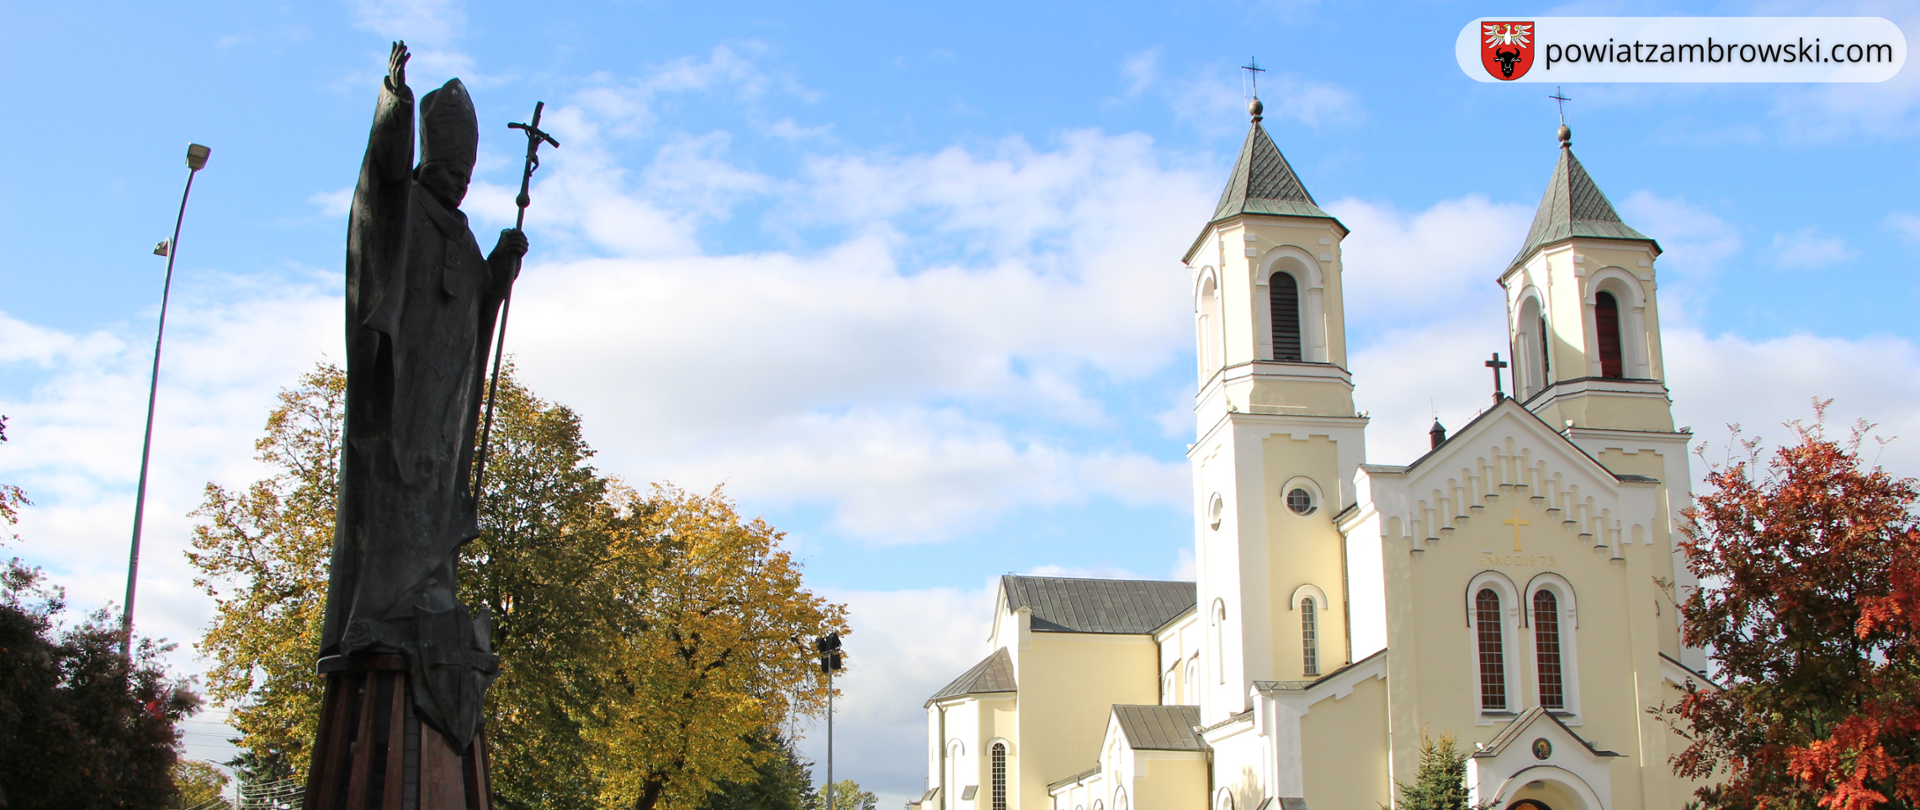 z lewej strony na zdjęciu znajduje się pomnik Jana Pawła II, w tle widoczny jest kościół pw. Trójcy Przenajświętszej w Zambrowie